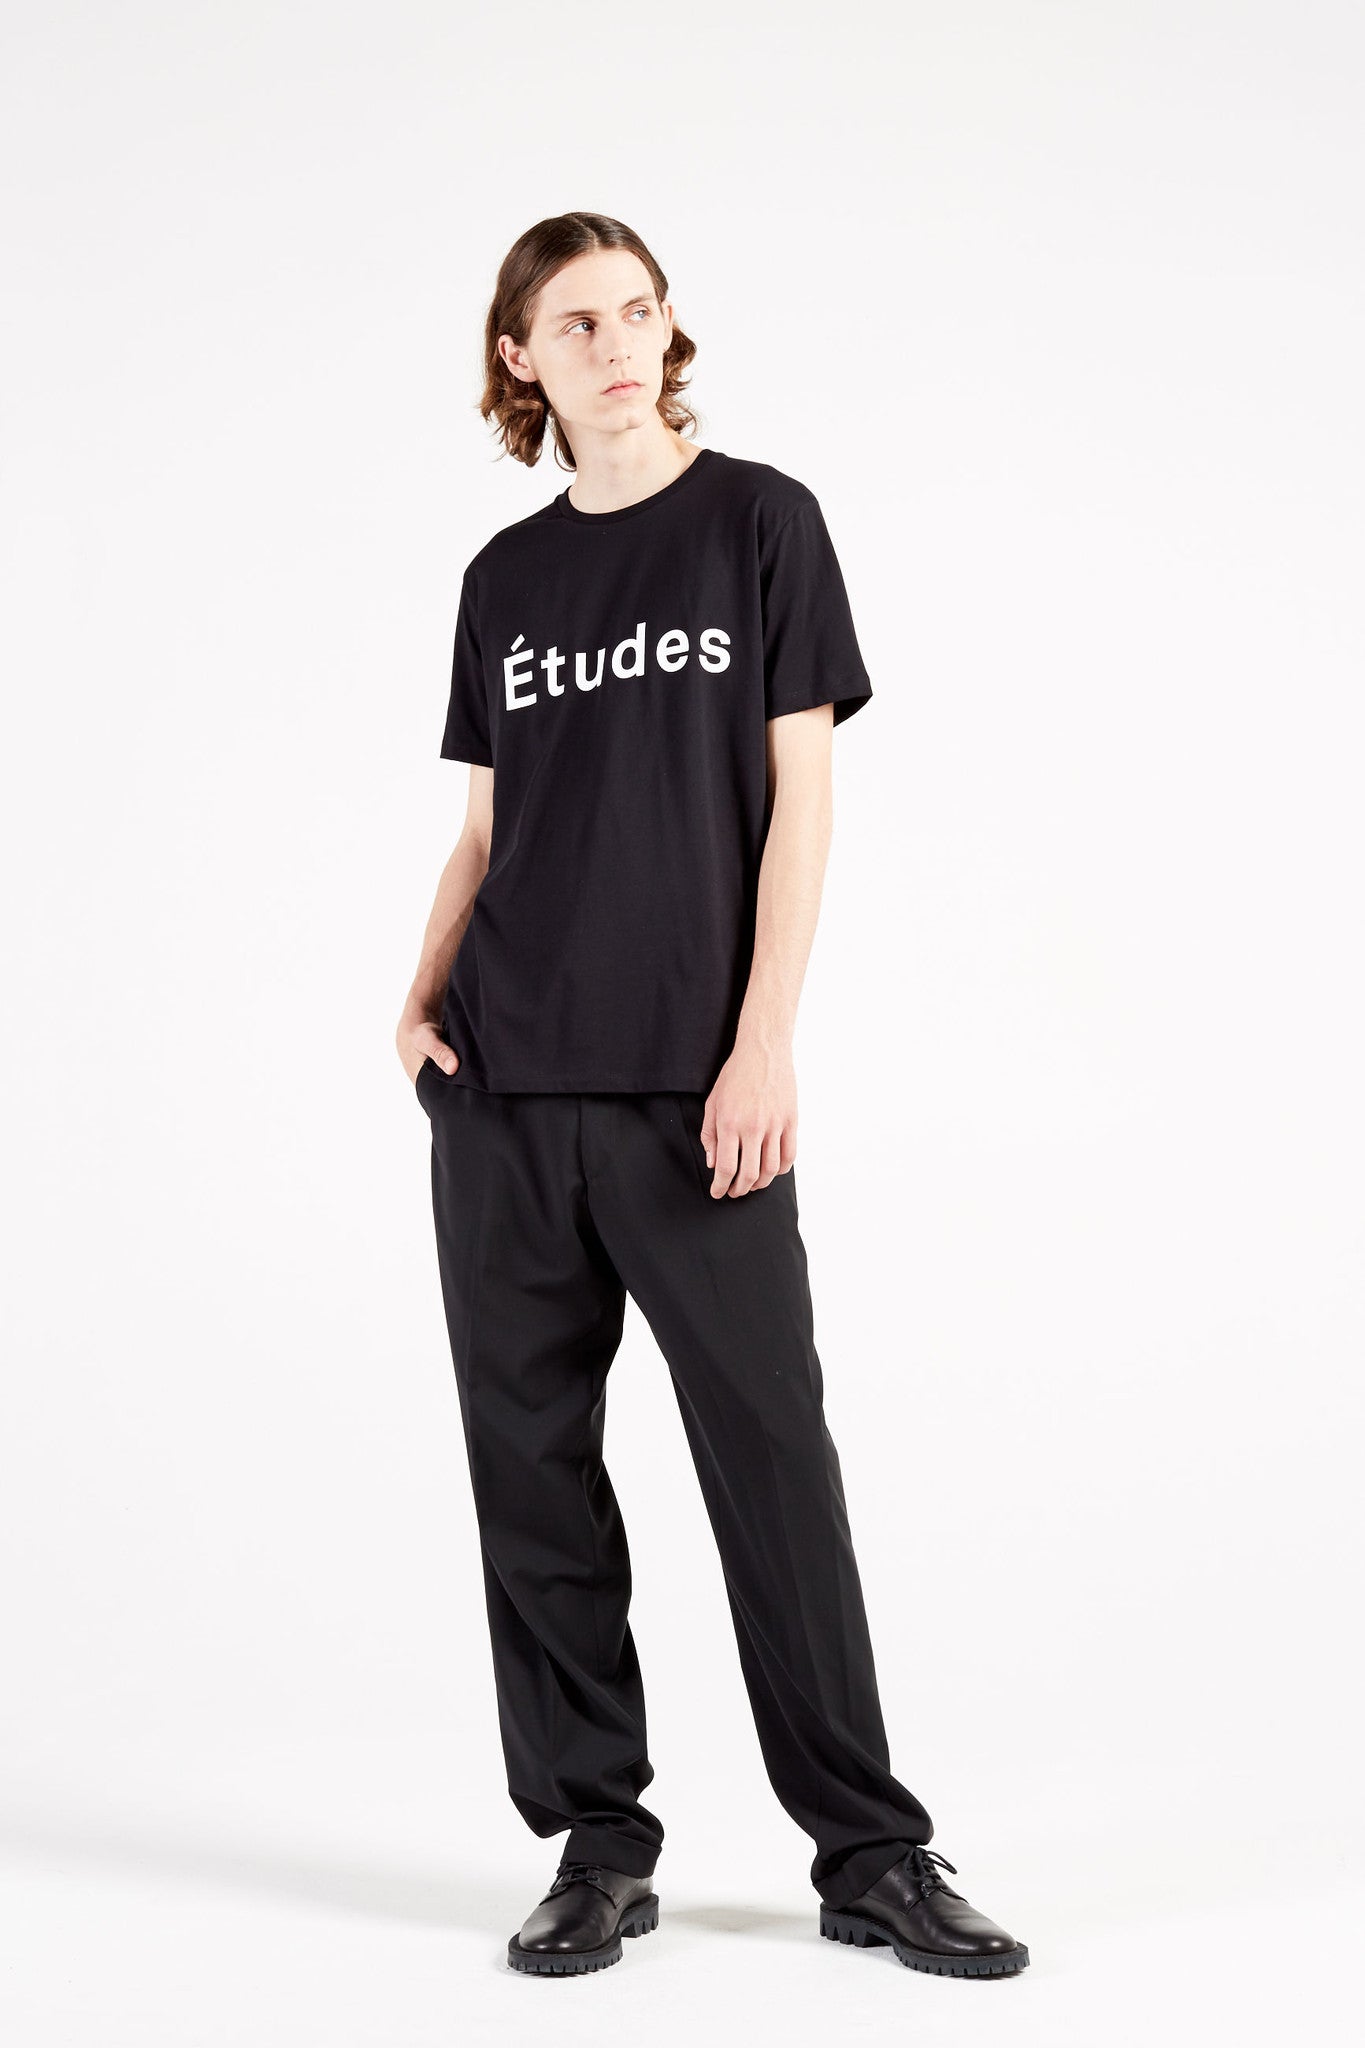 Études Studio - Page Études Black T-shirt